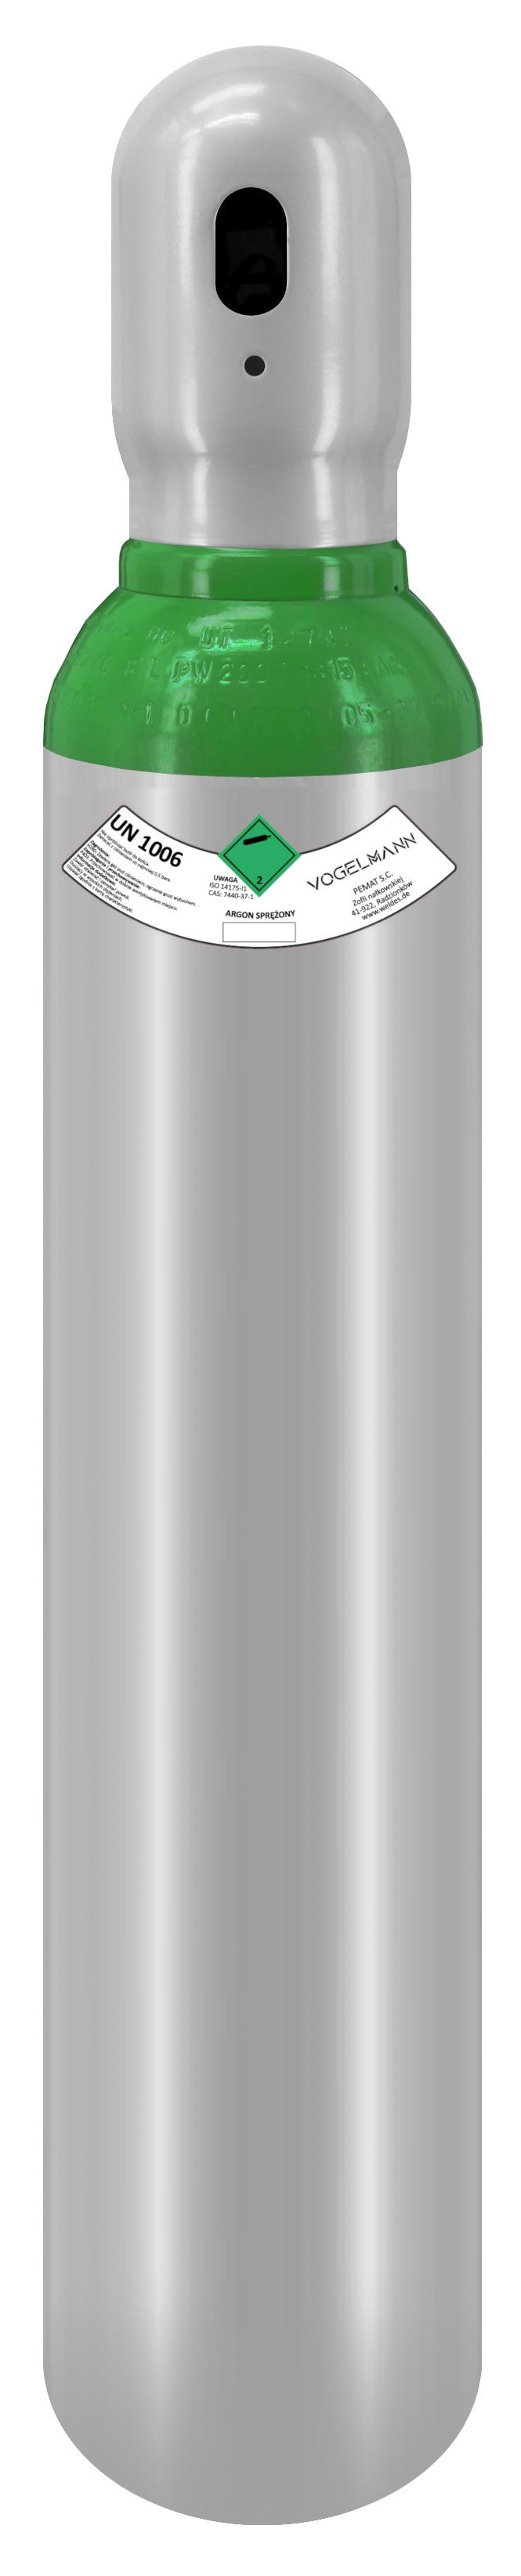 Argón 4.8 cilindro de gas completo 8L 1,5m3